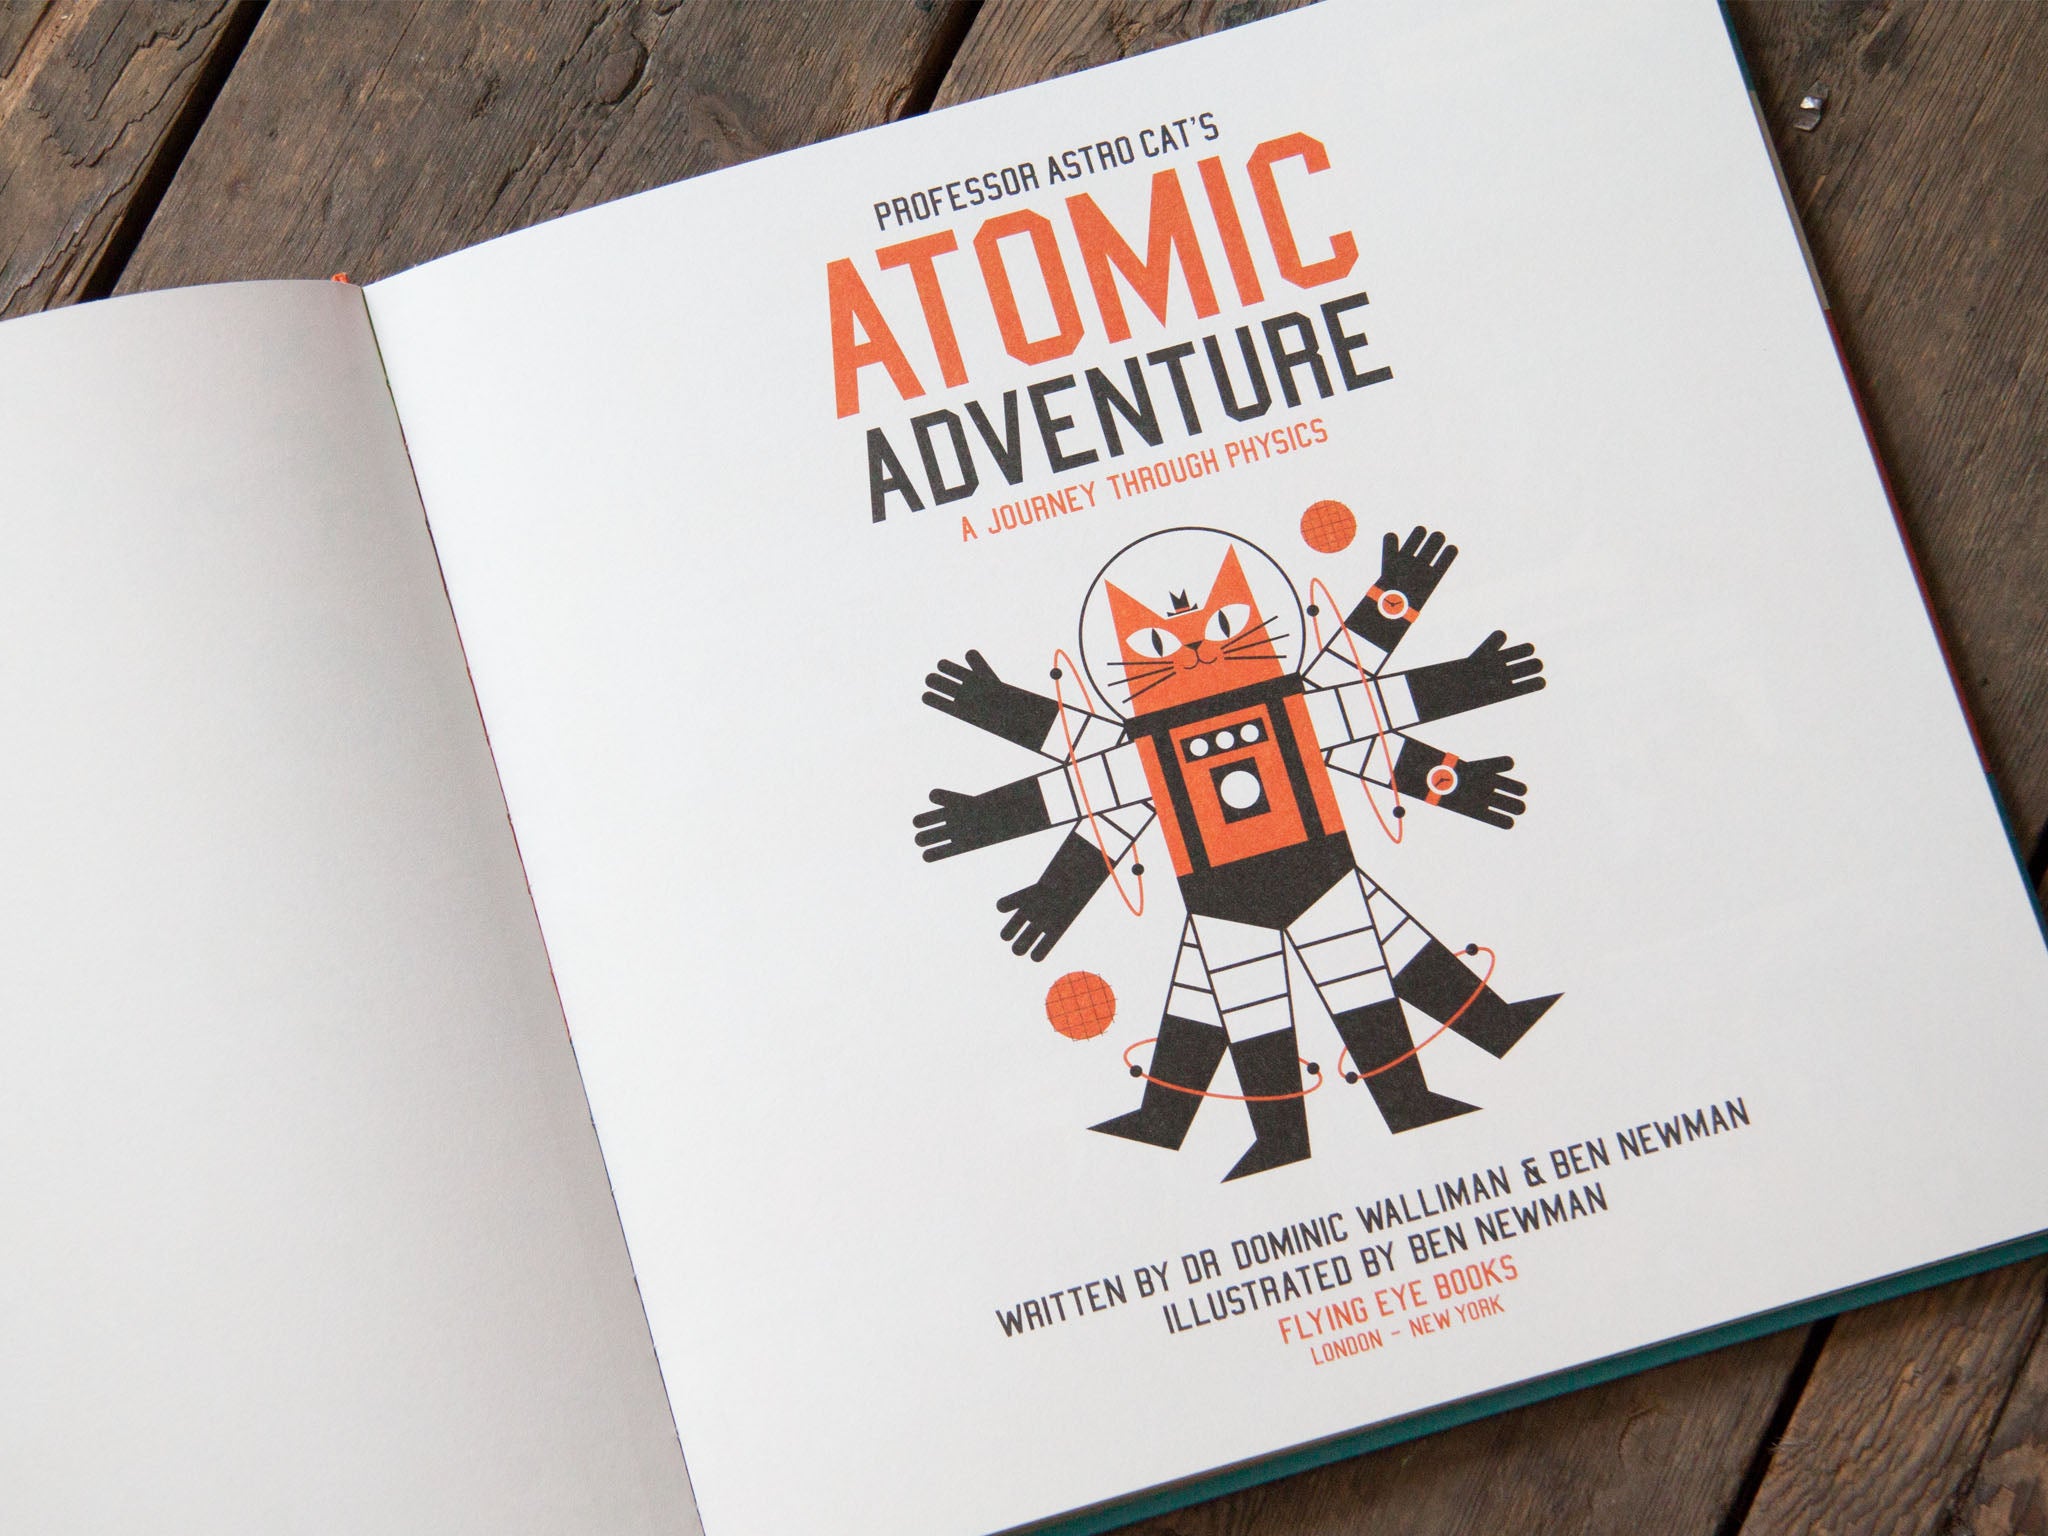 Professor Astro Cat’s Atomic Adventure